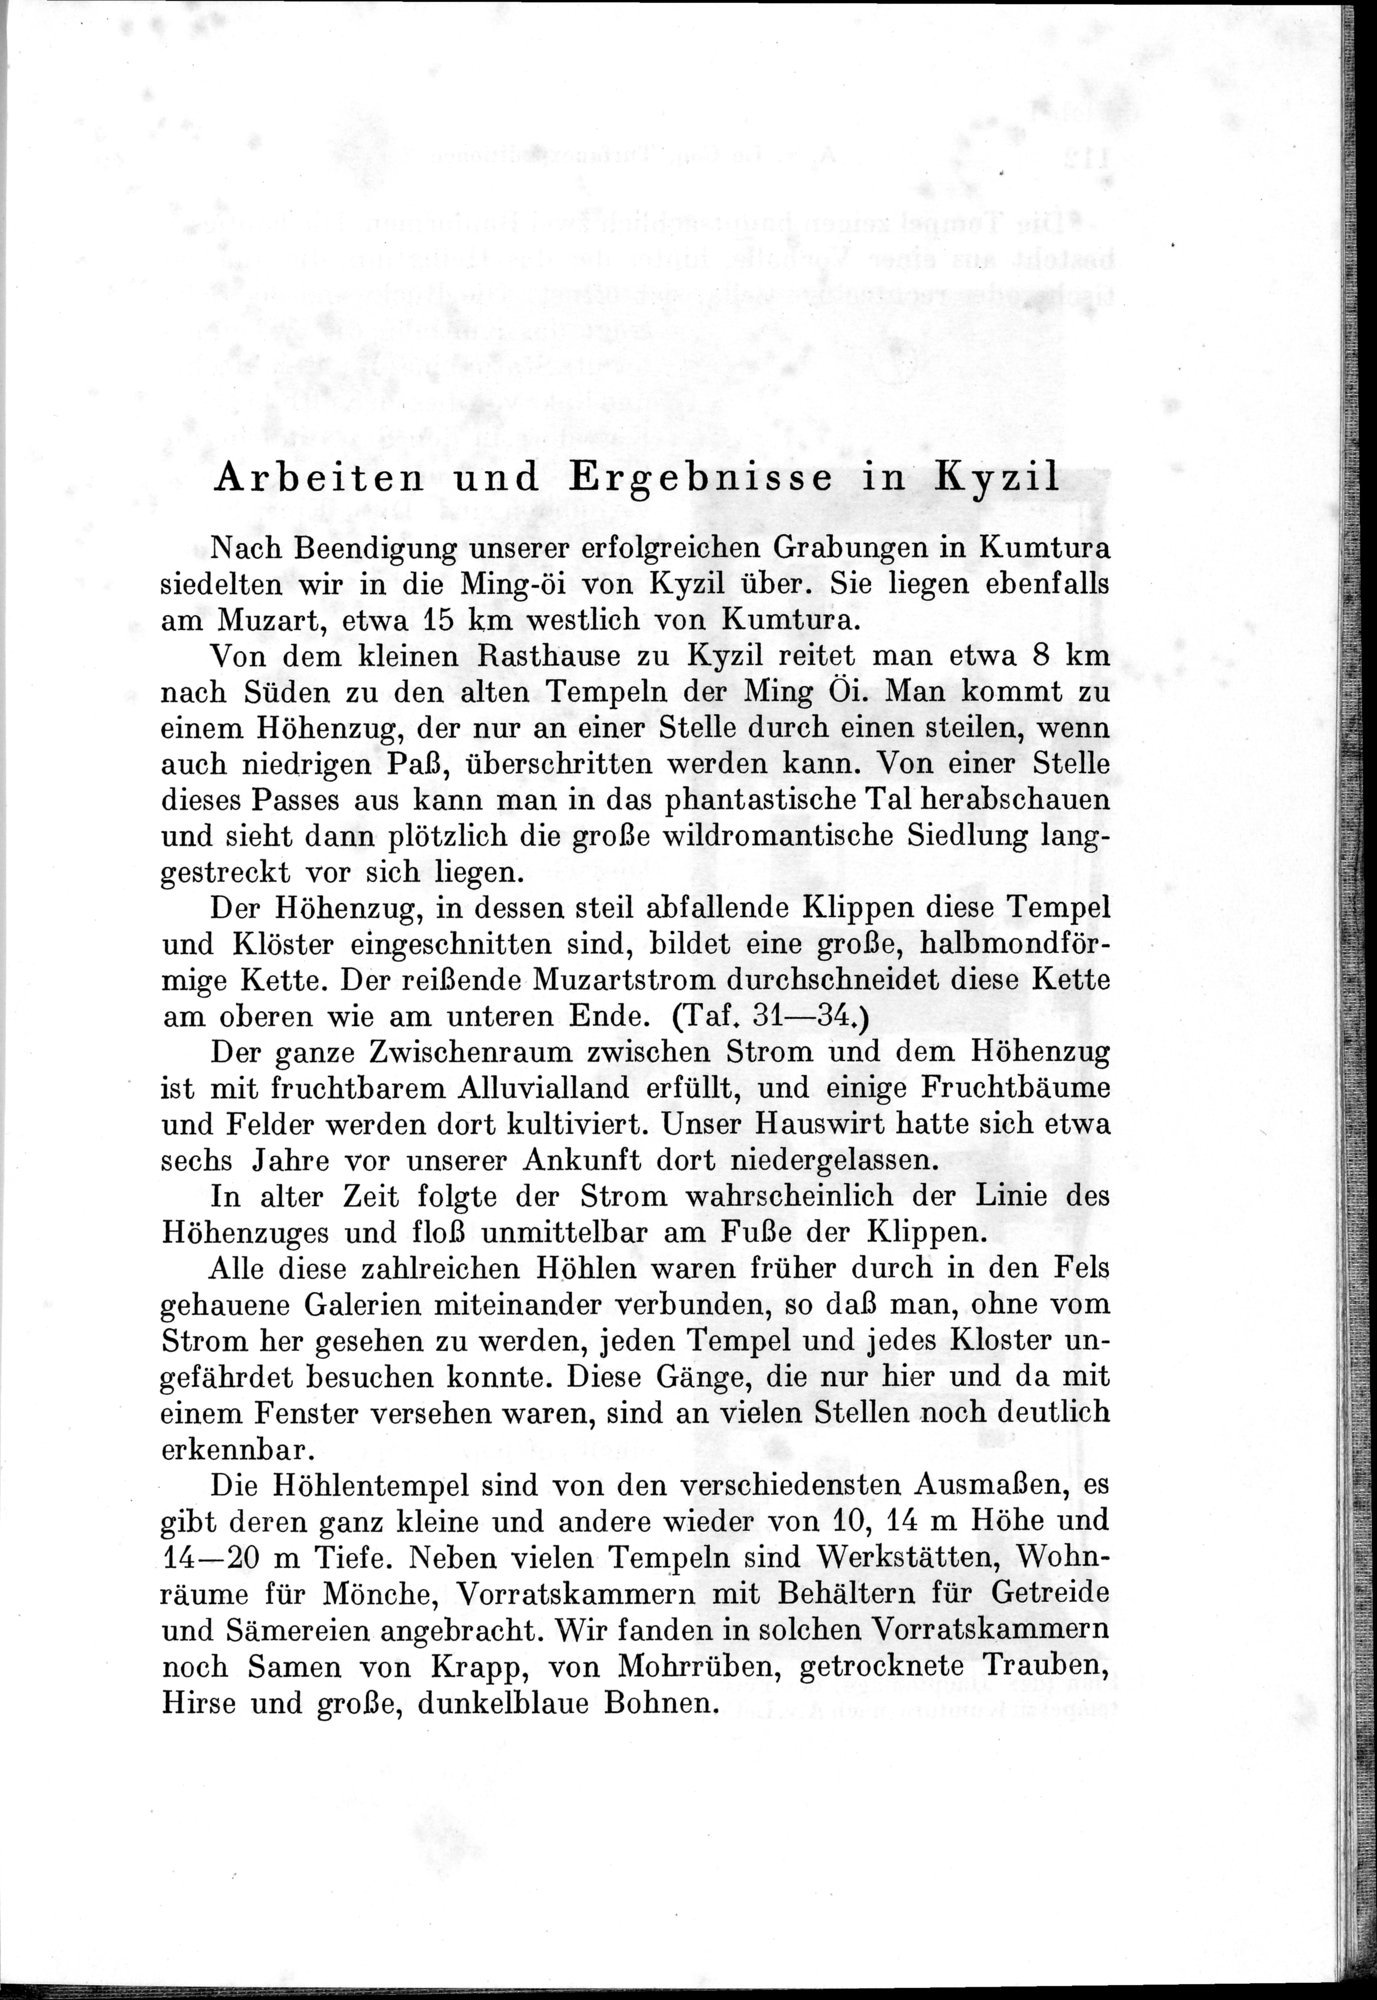 Auf Hellas Spuren in Ostturkistan : vol.1 / Page 161 (Grayscale High Resolution Image)